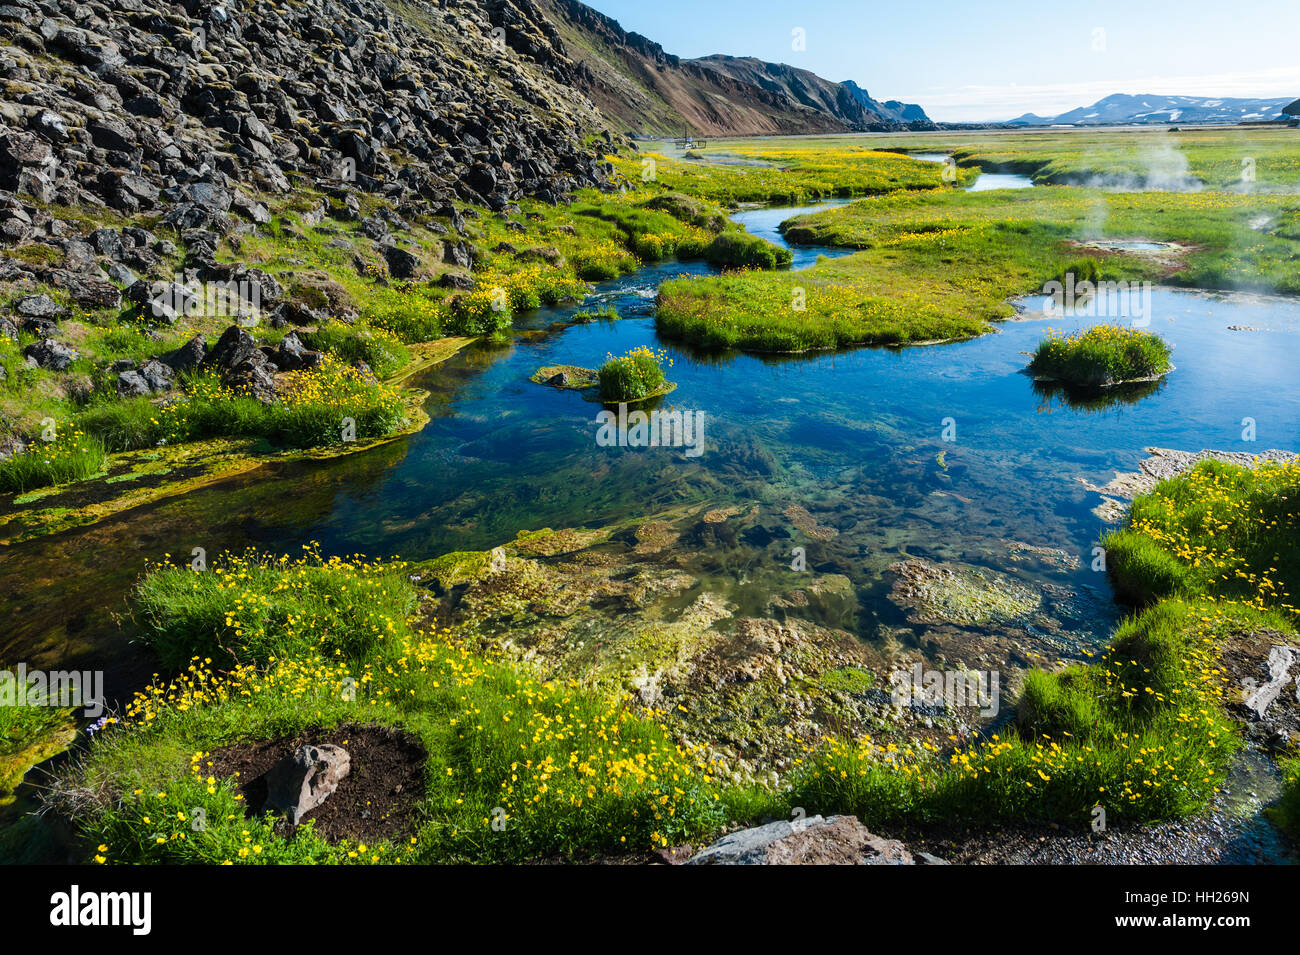 Landmannalaugar est un endroit dans la réserve naturelle de Fjallabak dans les hautes terres d'Islande. Hot spring. Banque D'Images